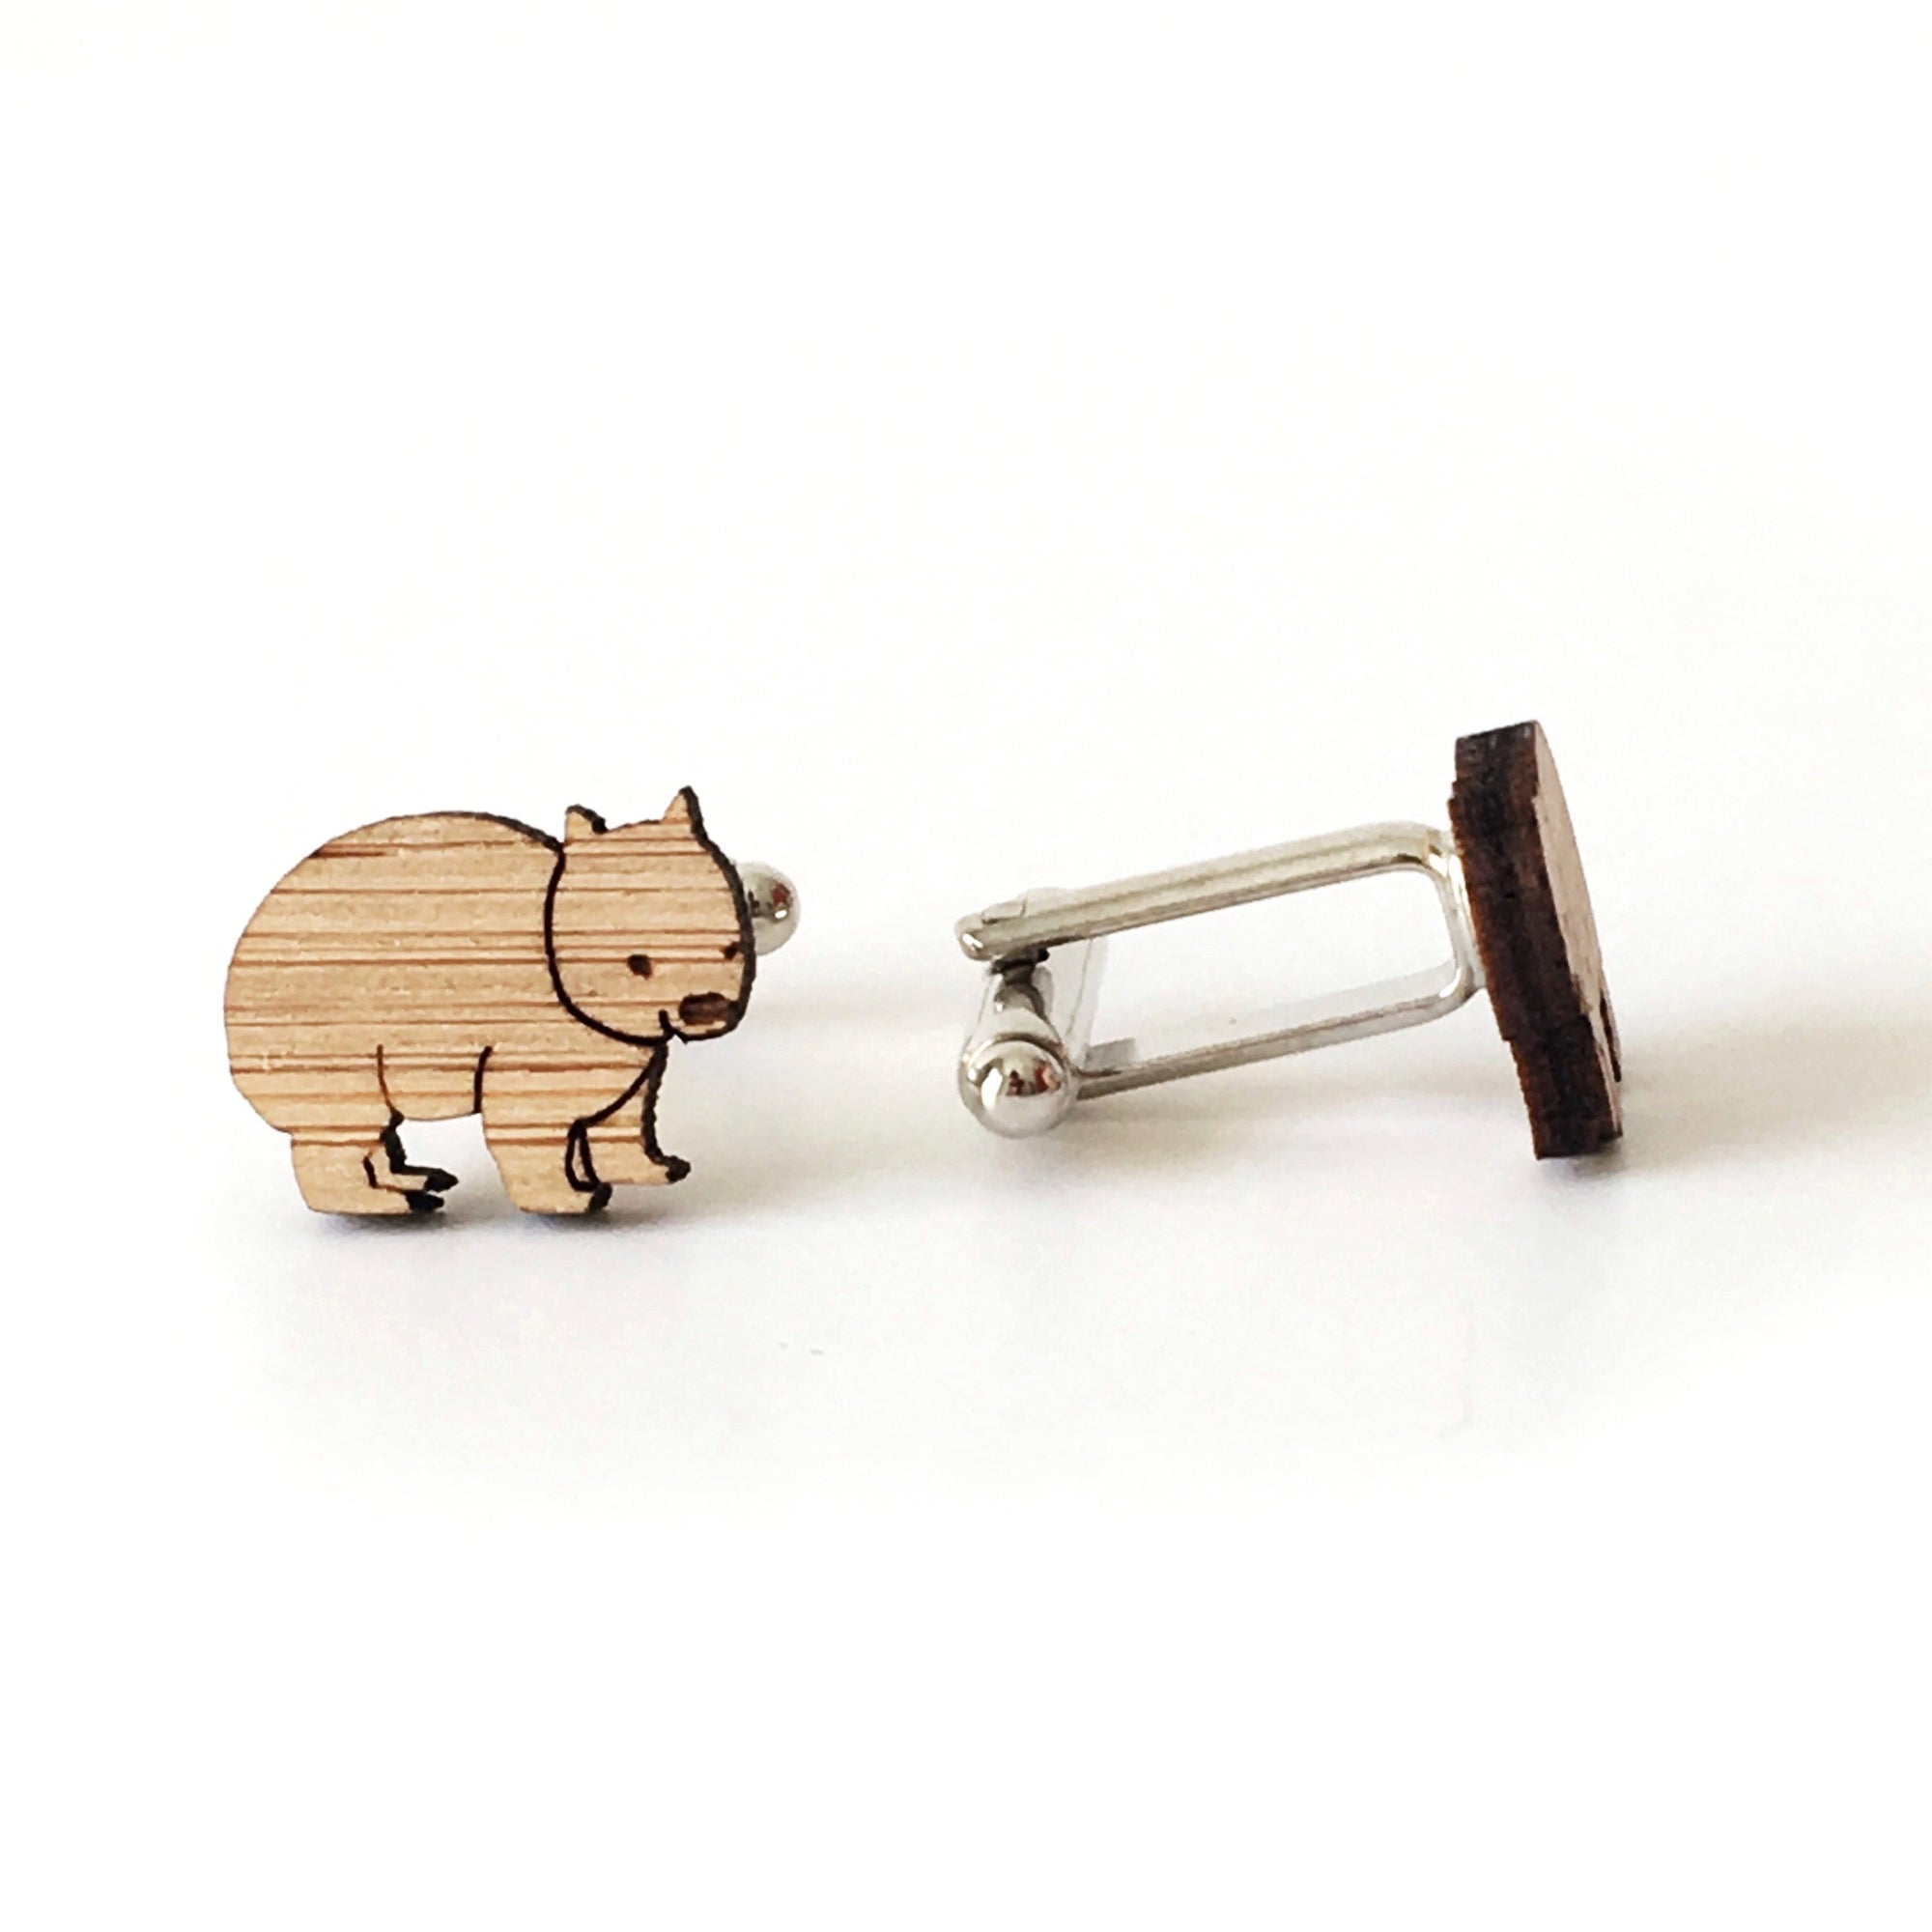 Wombat cufflinks - jewellery - eco friendly - sustainable jewelry - jewelry - One Happy Leaf